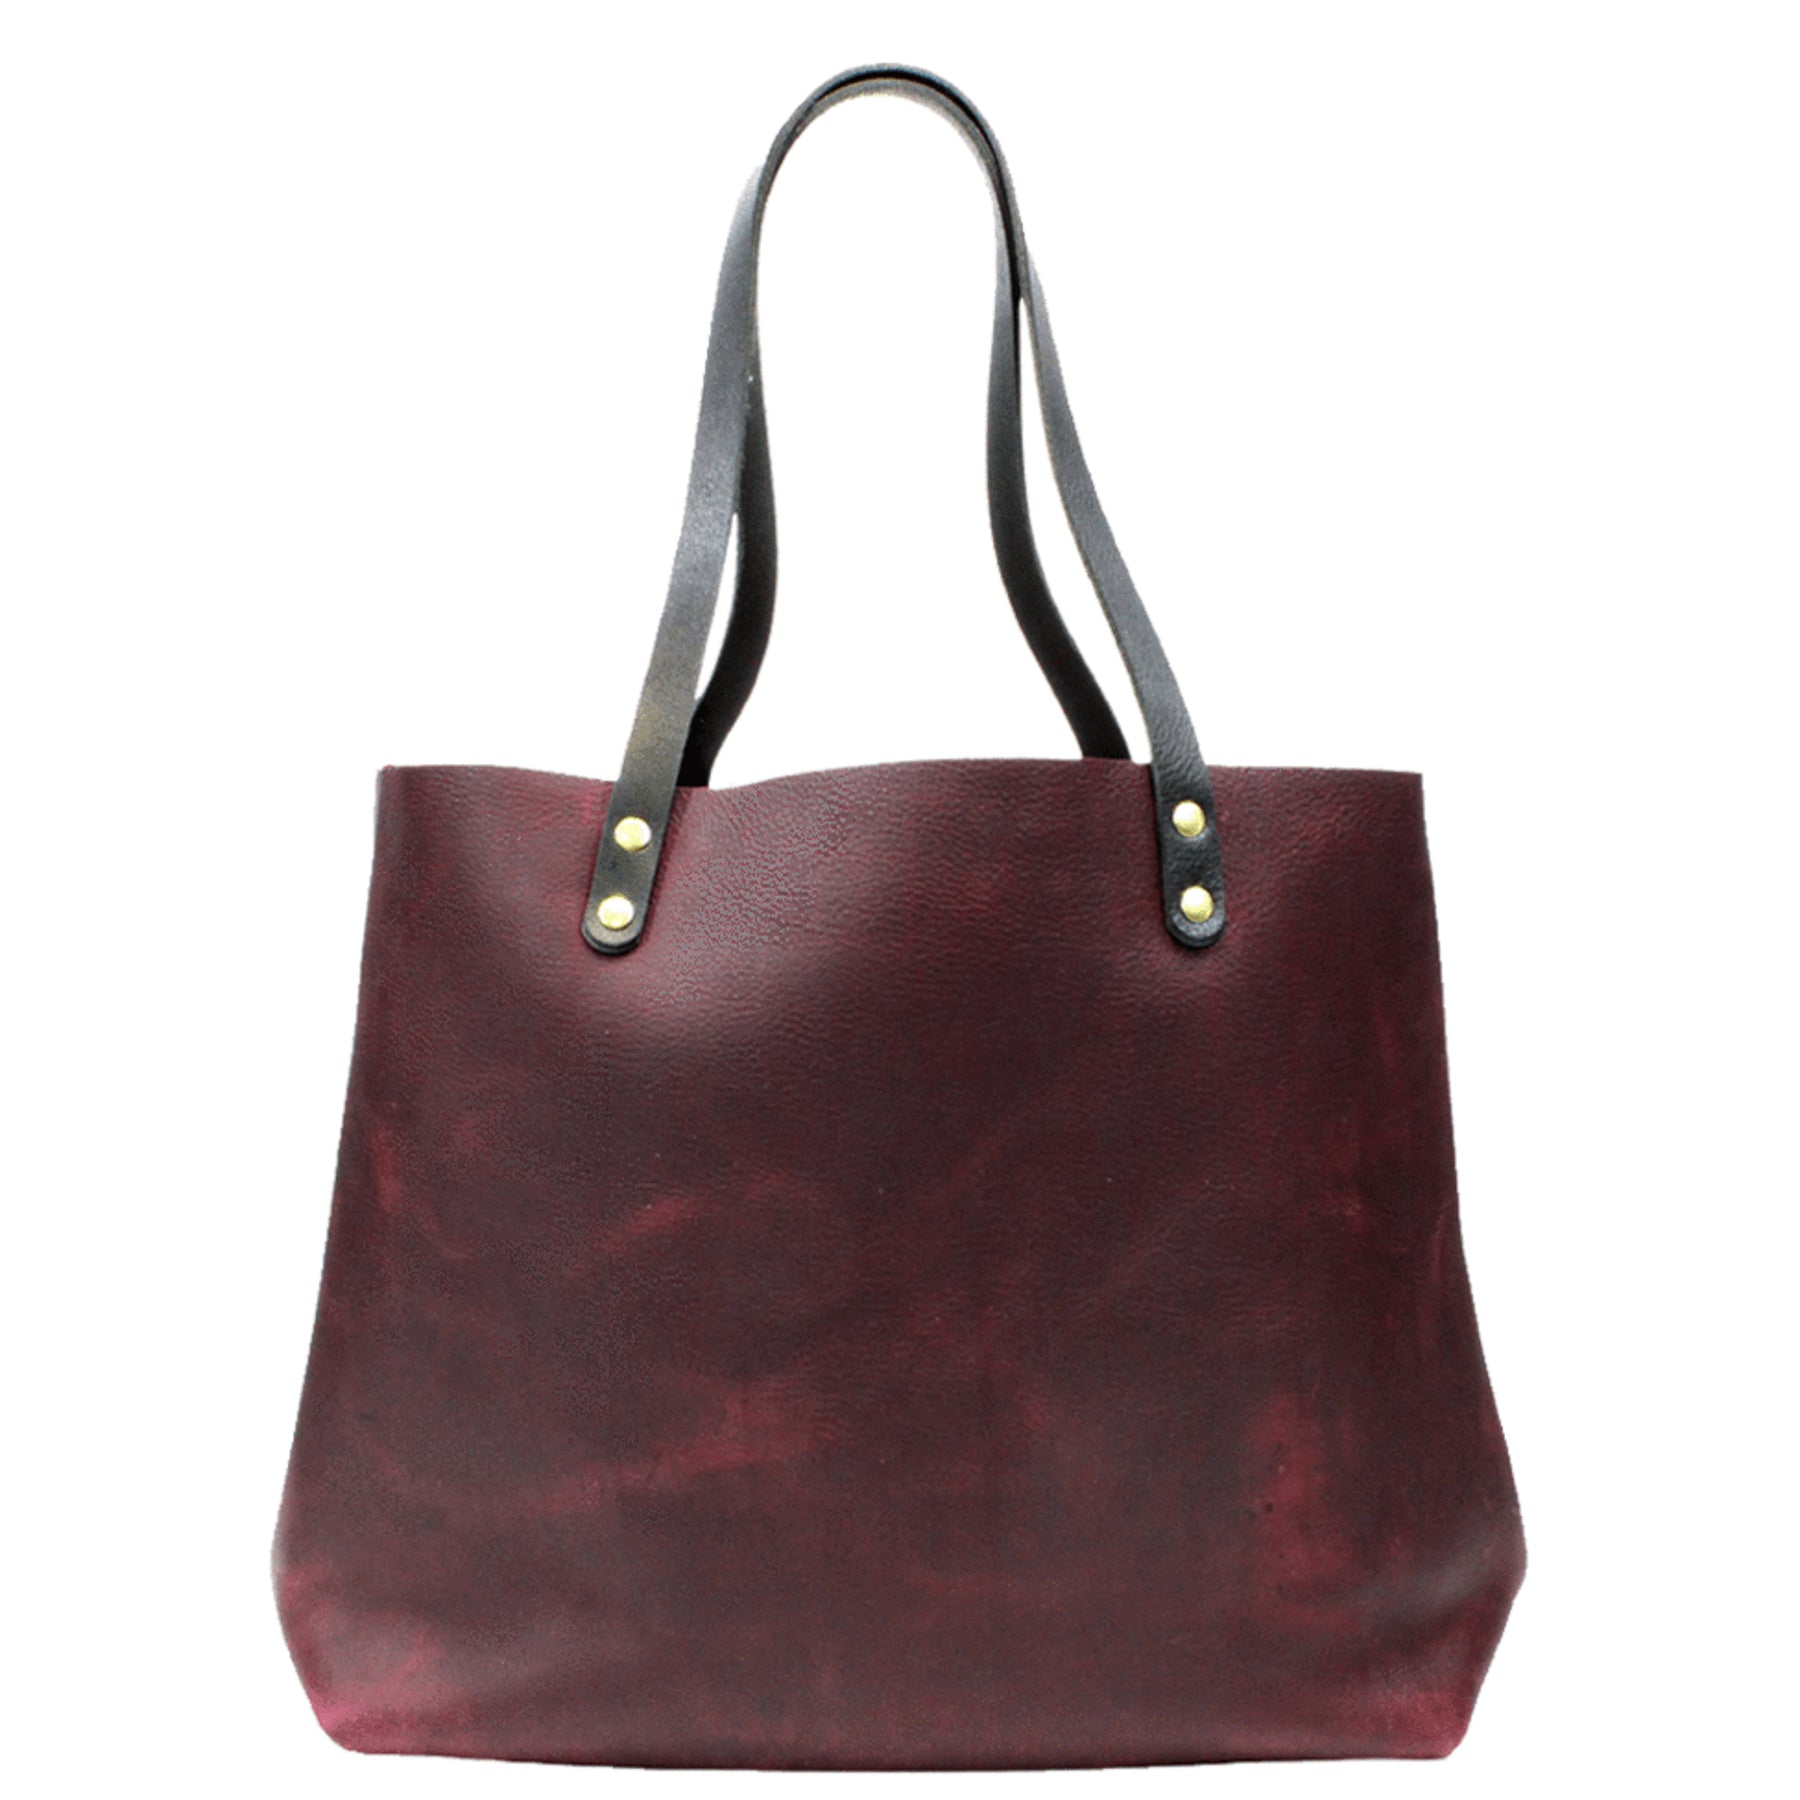 Nina Messenger Handbag Burgundy Vegan Leather – Fable England US